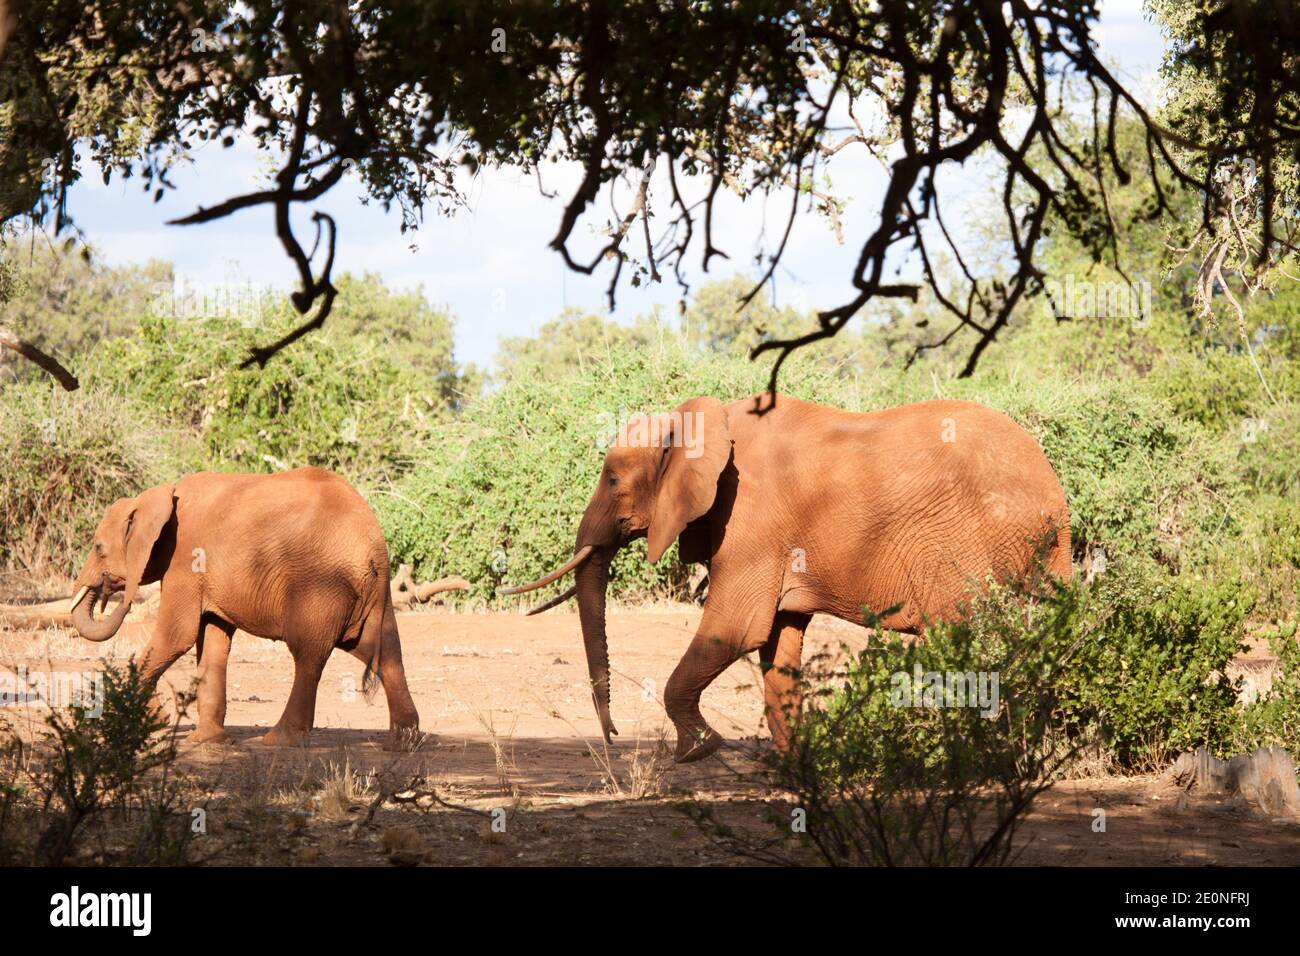 Two elephants walking, on safari in the scenery of Kenya. Stock Photo